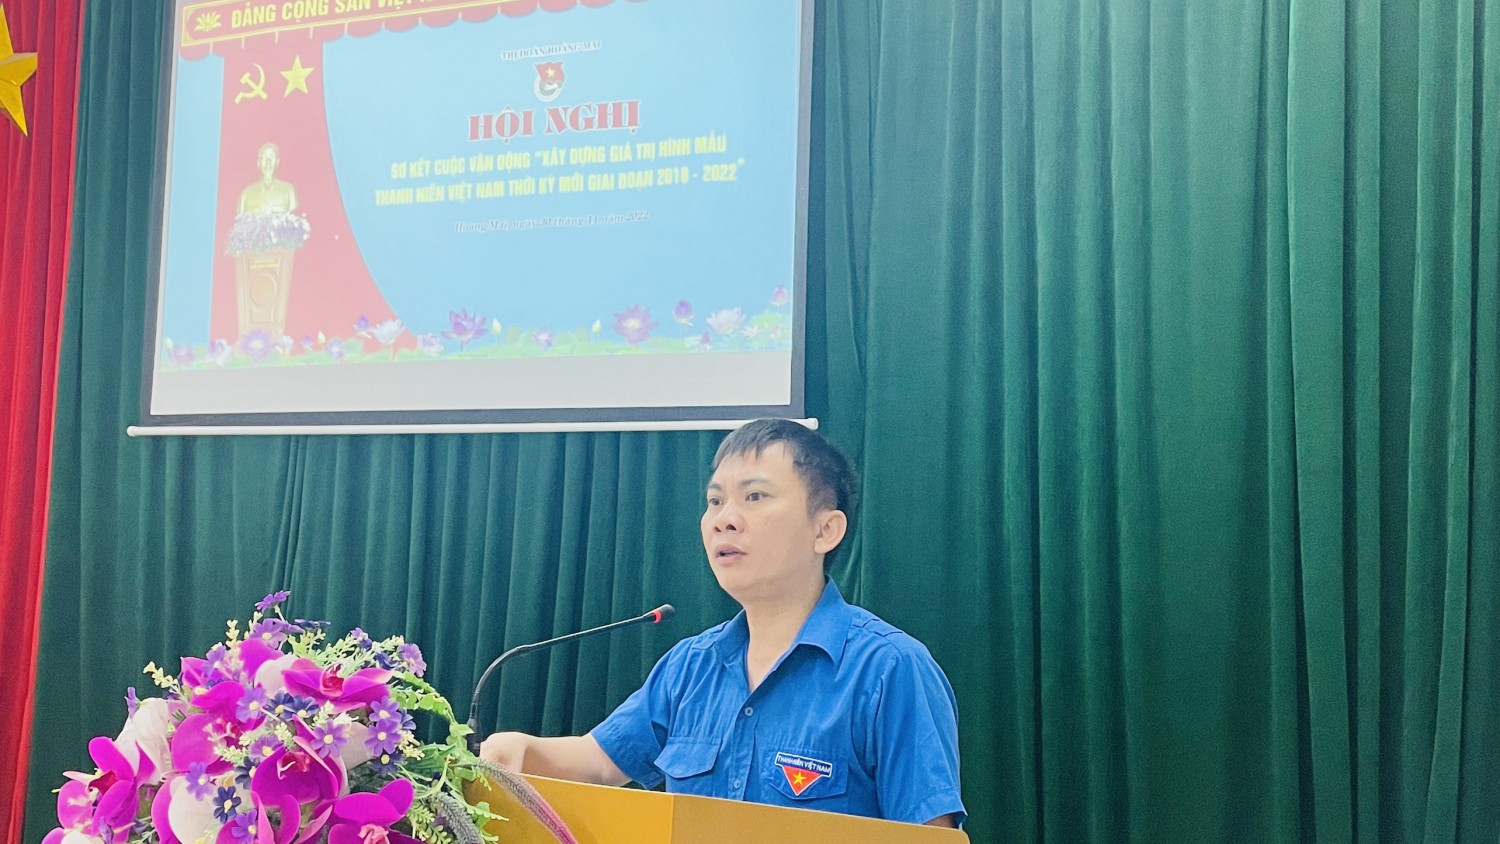 Hoàng Mai: Hội nghị sơ kết cuộc vận động Xây dựng giá trị hình mẫu thanh niên Việt Nam thời kỳ mới giai đoạn 2018-2022